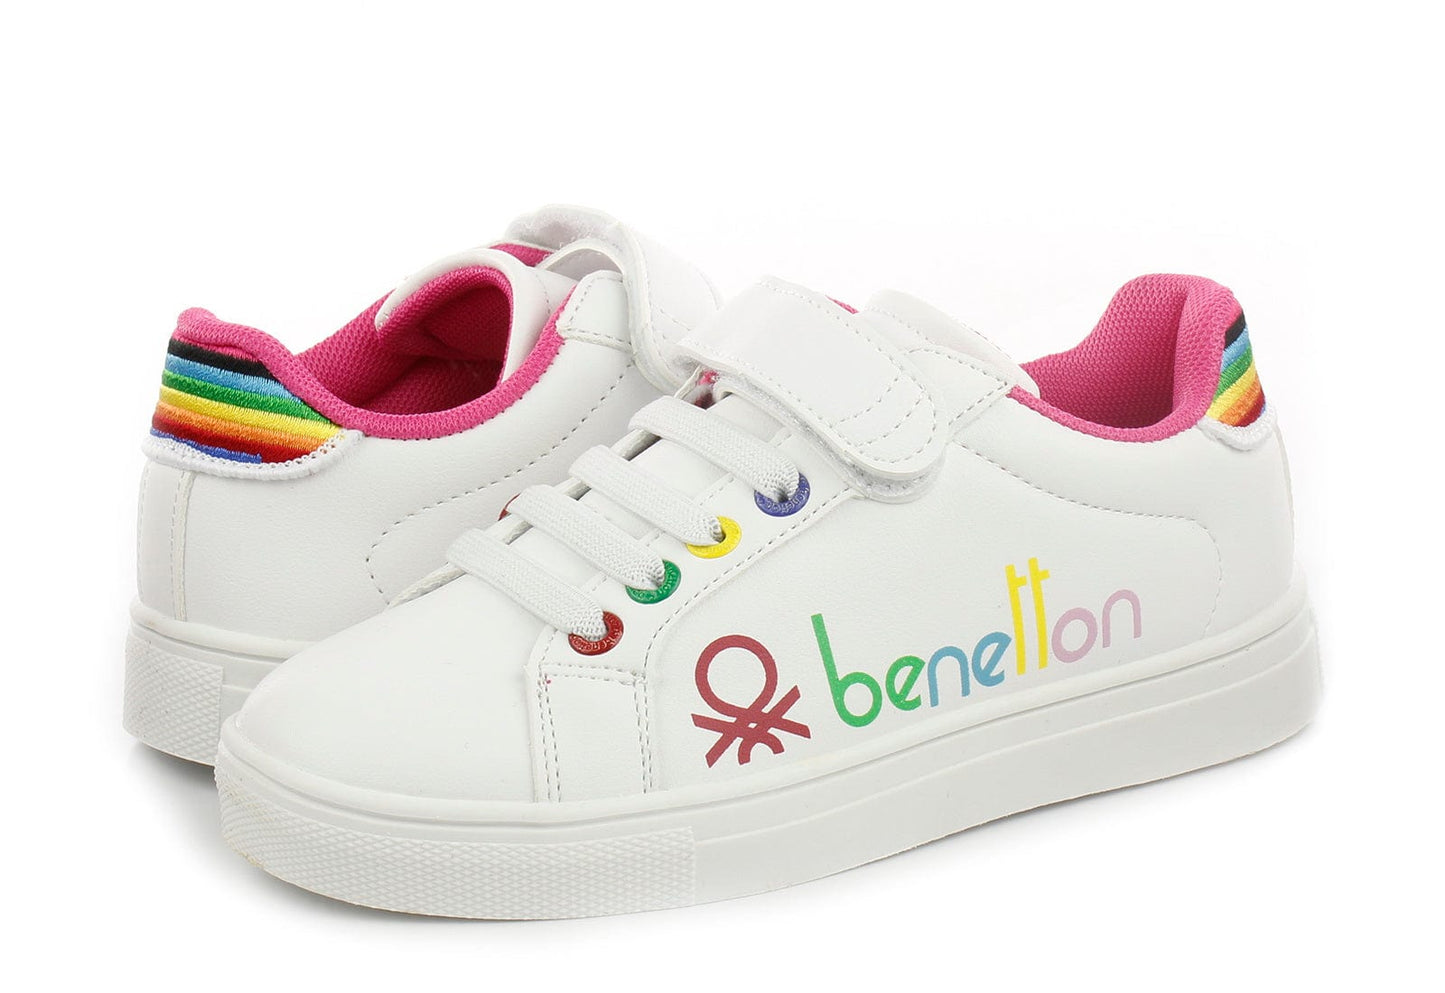 Παιδικά Sneakers United Colors Of Benetton swiftly  λευκό / φούξια   BTK214102-La Scarpa Shoes Παιδικά Sneakers United Colors Of Benetton swiftly  λευκό / φούξια   BTK214102 GIRLS UNITED COLORS OF BENETTON